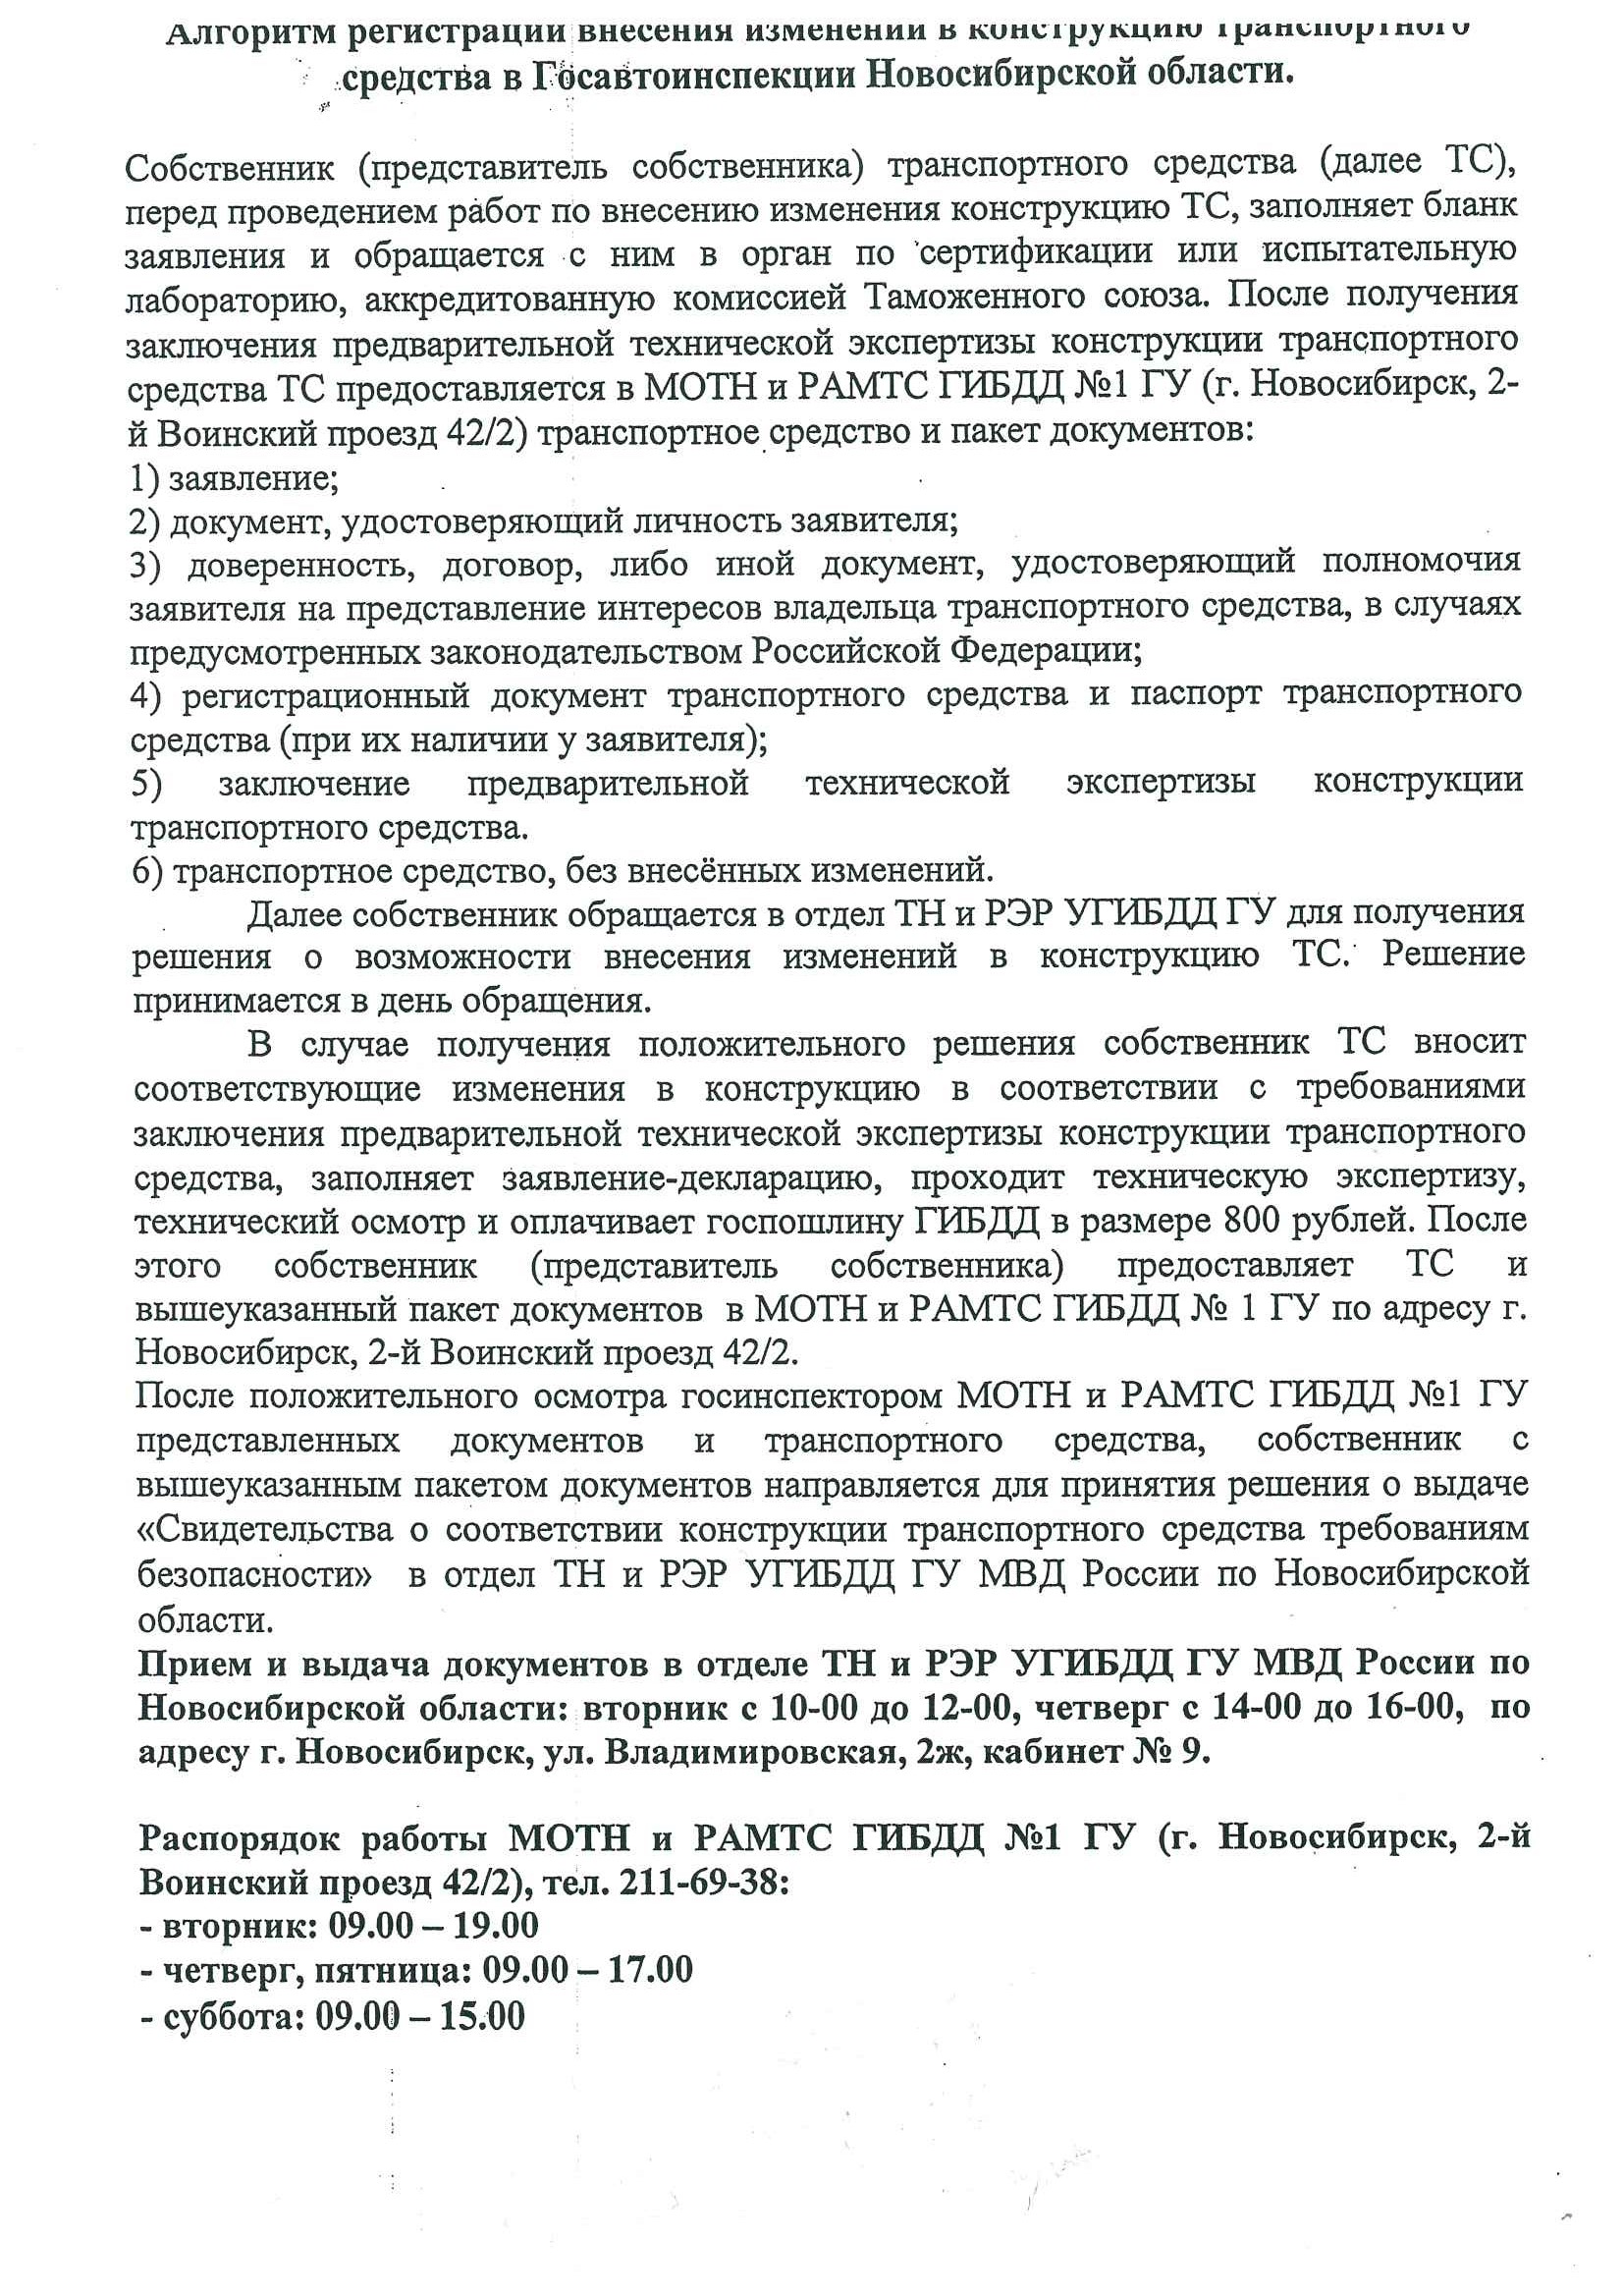 процедура в Новосибирске.jpg, 908.19 kb, 1653 x 2338